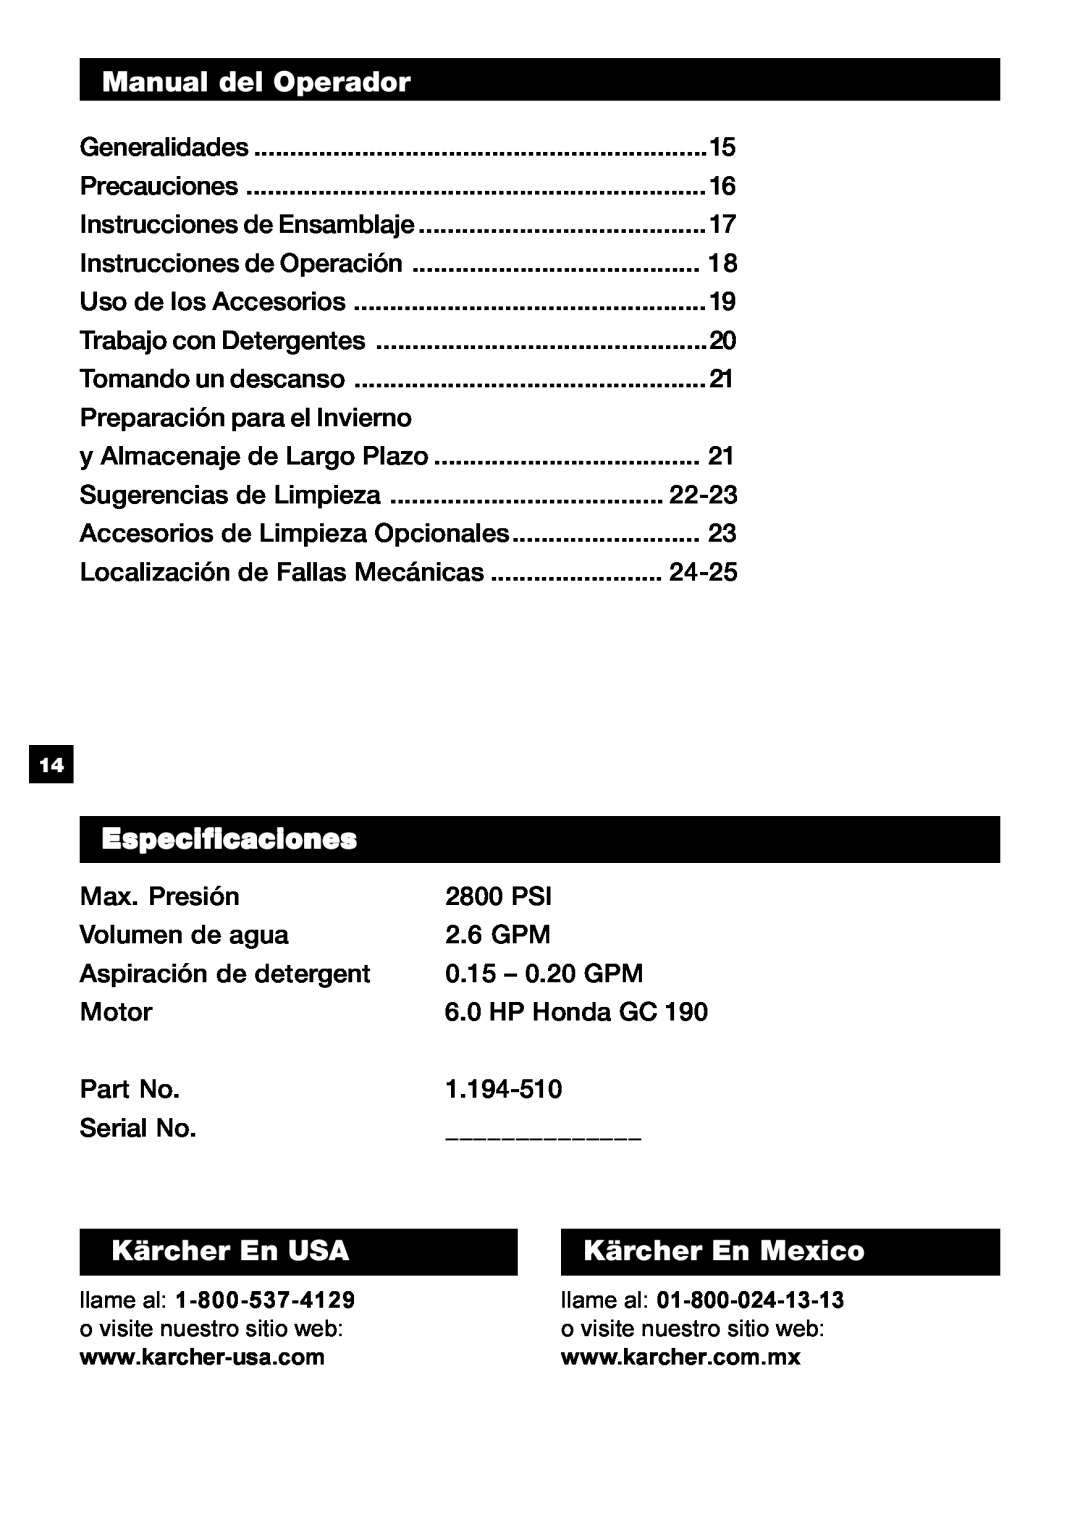 Karcher G 2800 OH manual Manual del Operador, Especificaciones, Kärcher En USA, Kärcher En Mexico 